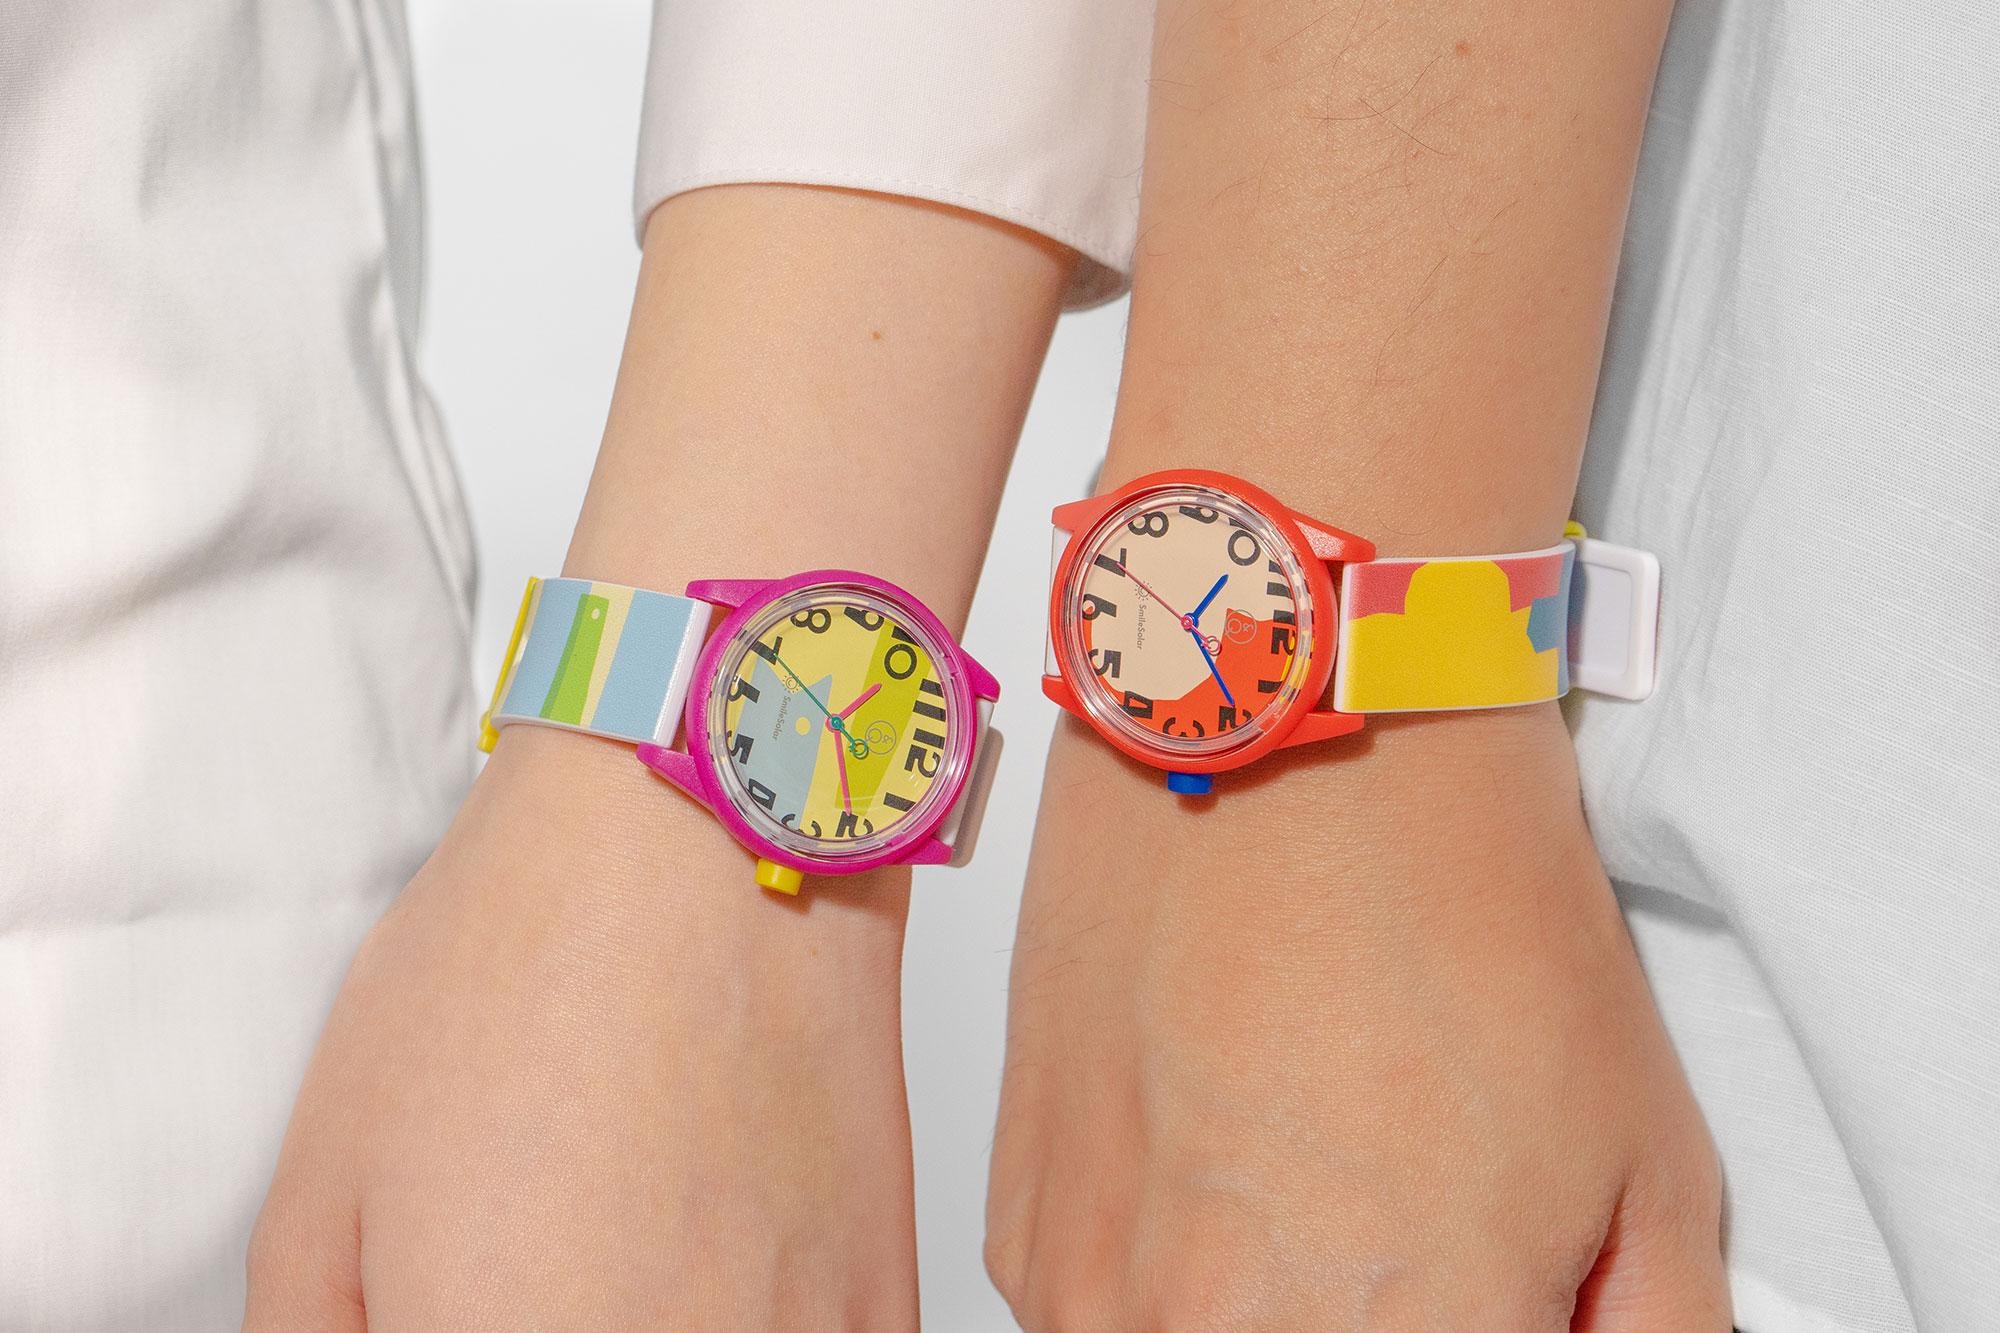 電池交換いらず、6000円で買えるシチズンのソーラー腕時計。夏の 